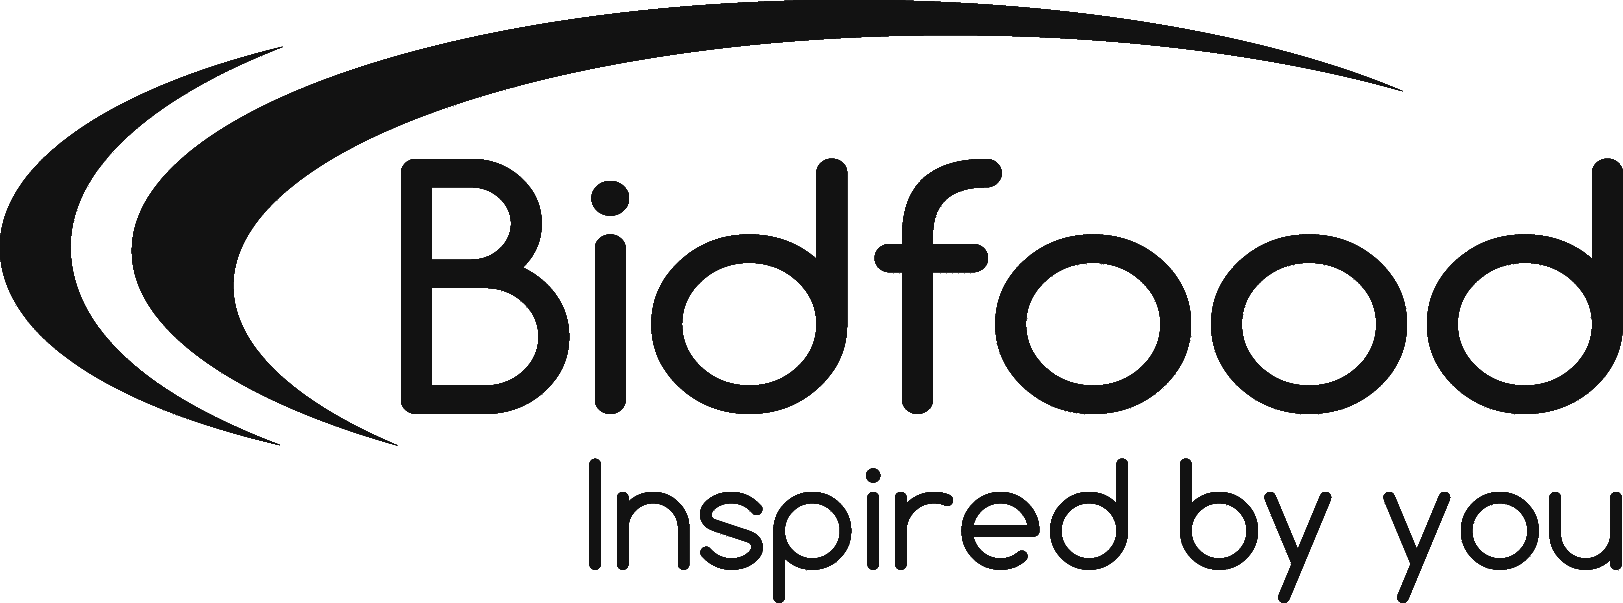 Bidfood-Logo-black-1